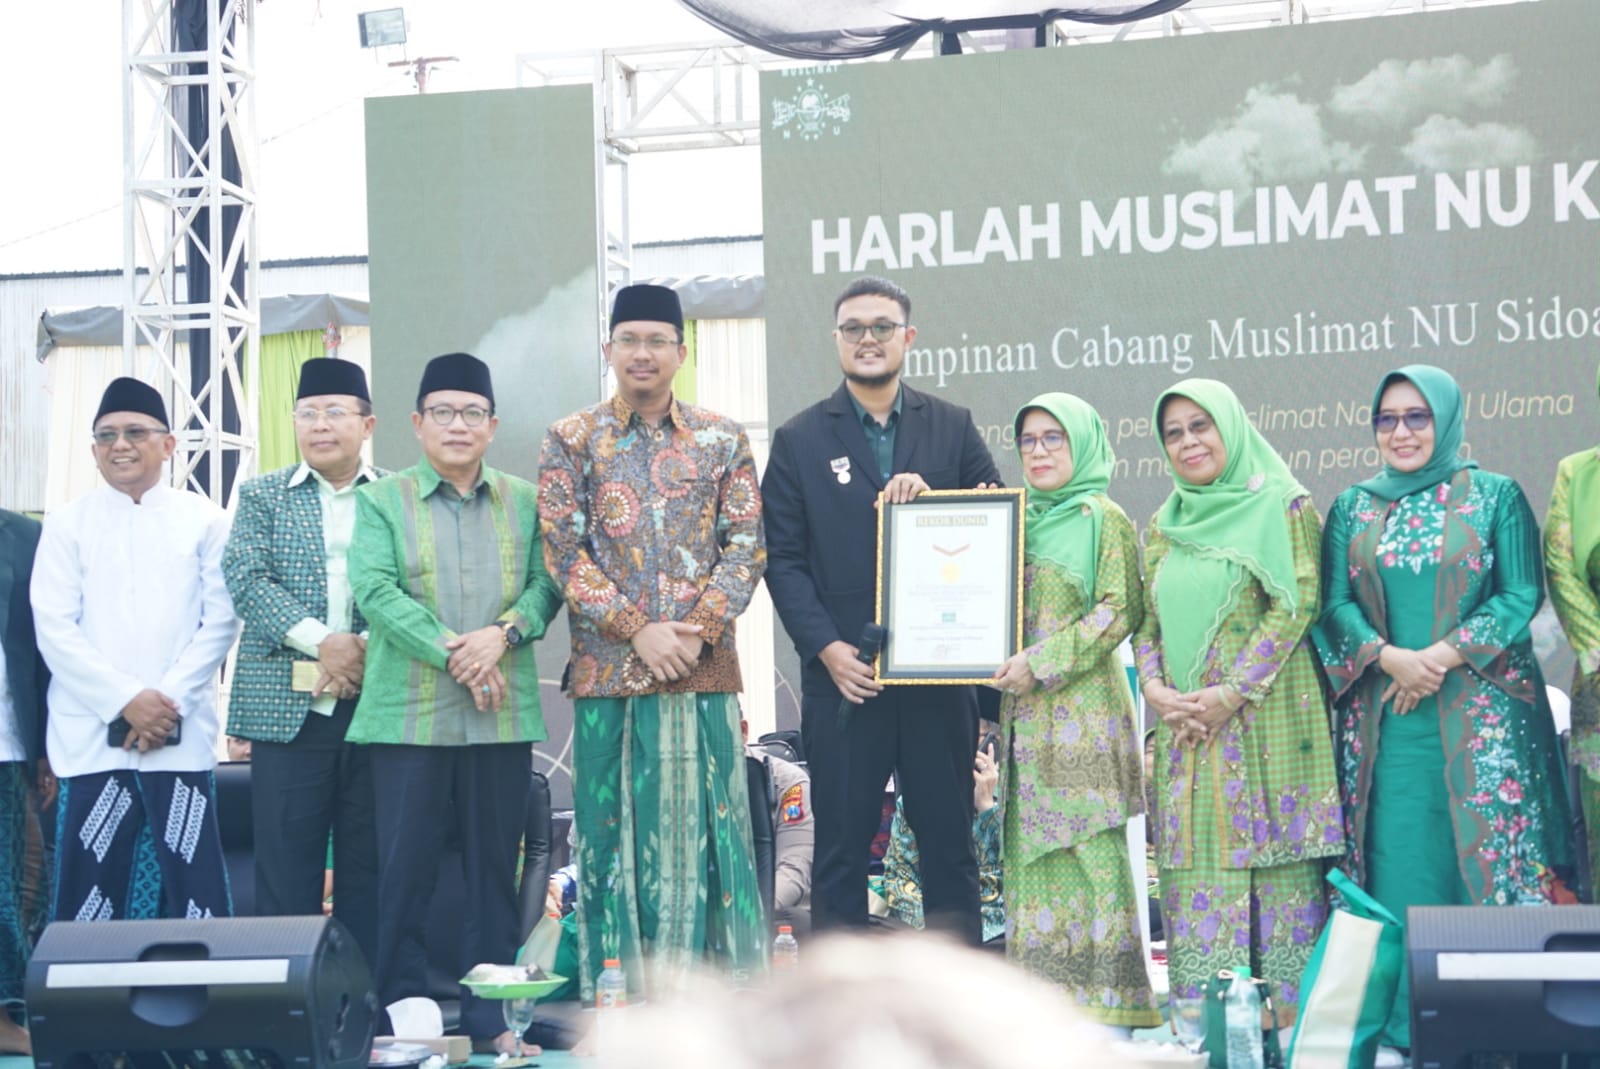 HUT Muslimat NU ke-77 Pecahkan Rekor MURI Makan Kupang Lontong Sidoarjo